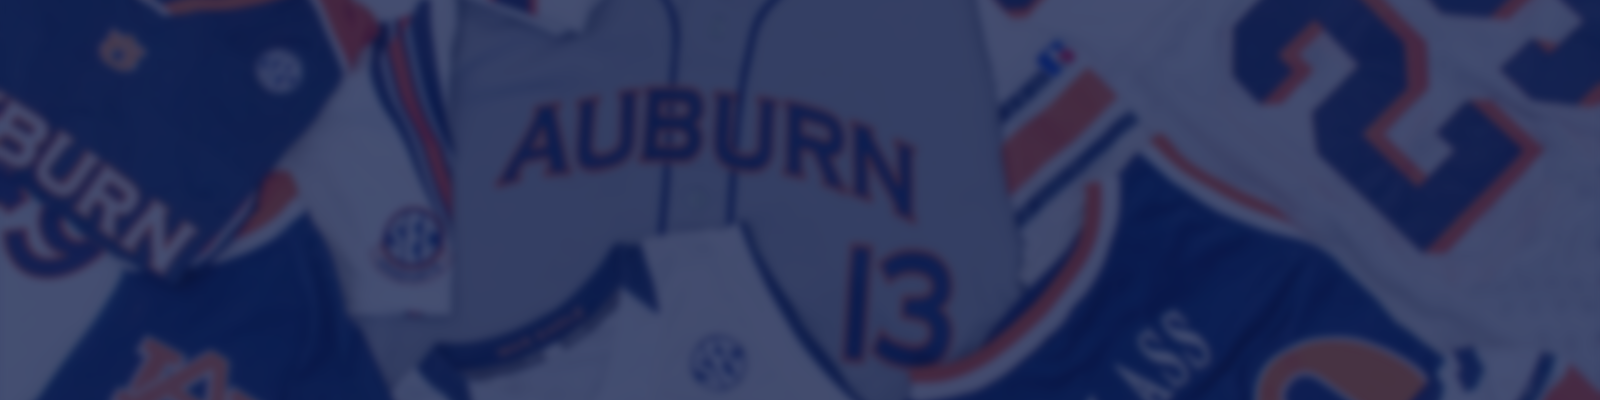 Crazy Auburn Concept Uniforms - Round 7 - Auburn Uniform Database